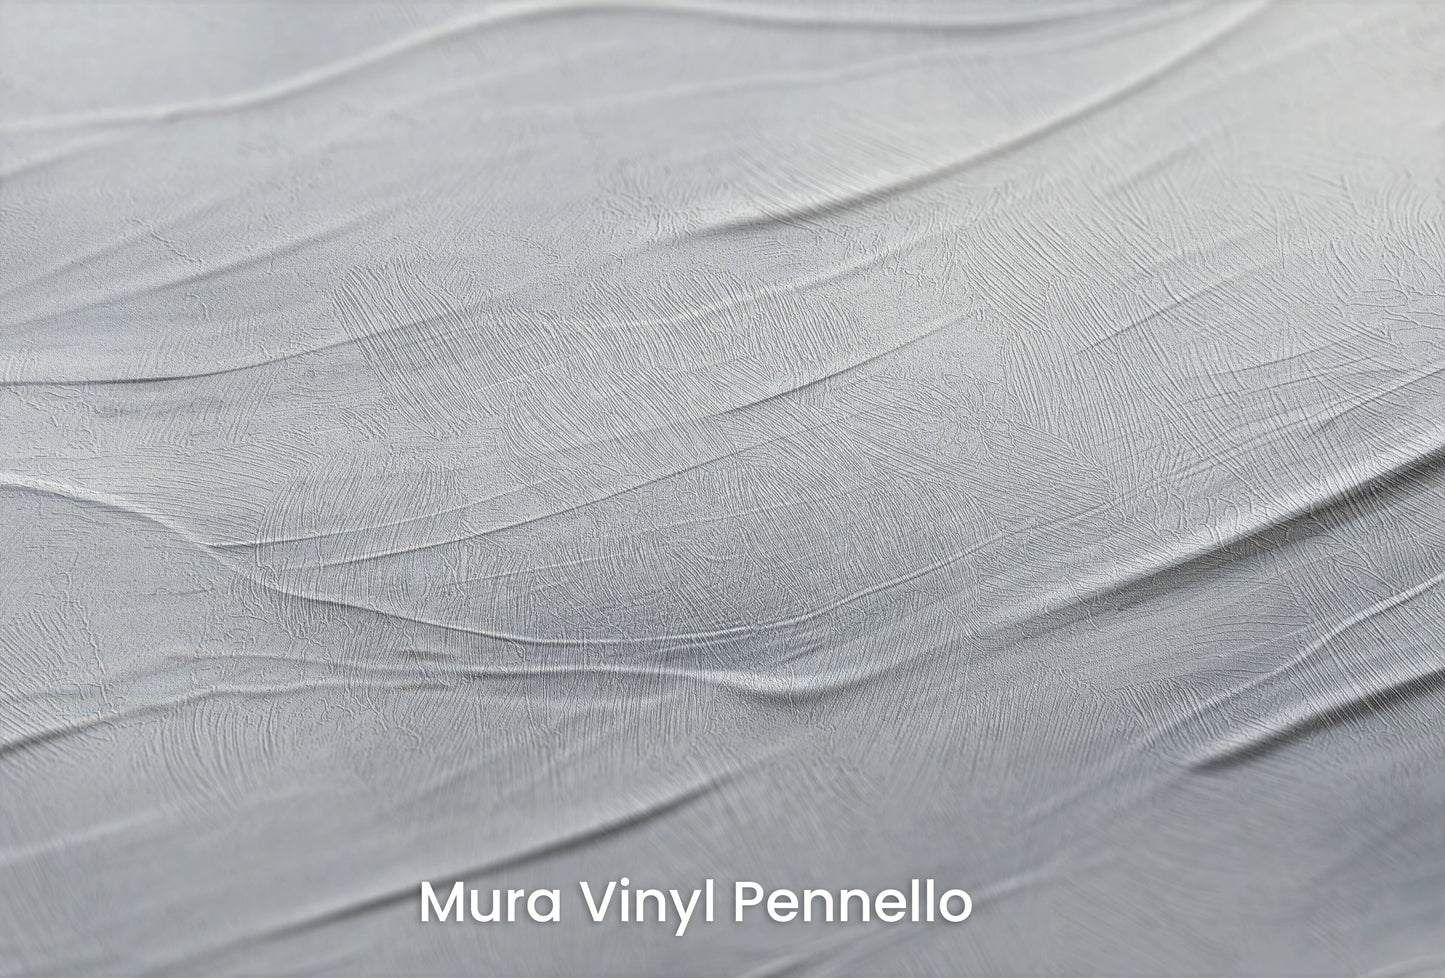 Zbliżenie na artystyczną fototapetę o nazwie Tranquil Current na podłożu Mura Vinyl Pennello - faktura pociągnięć pędzla malarskiego.